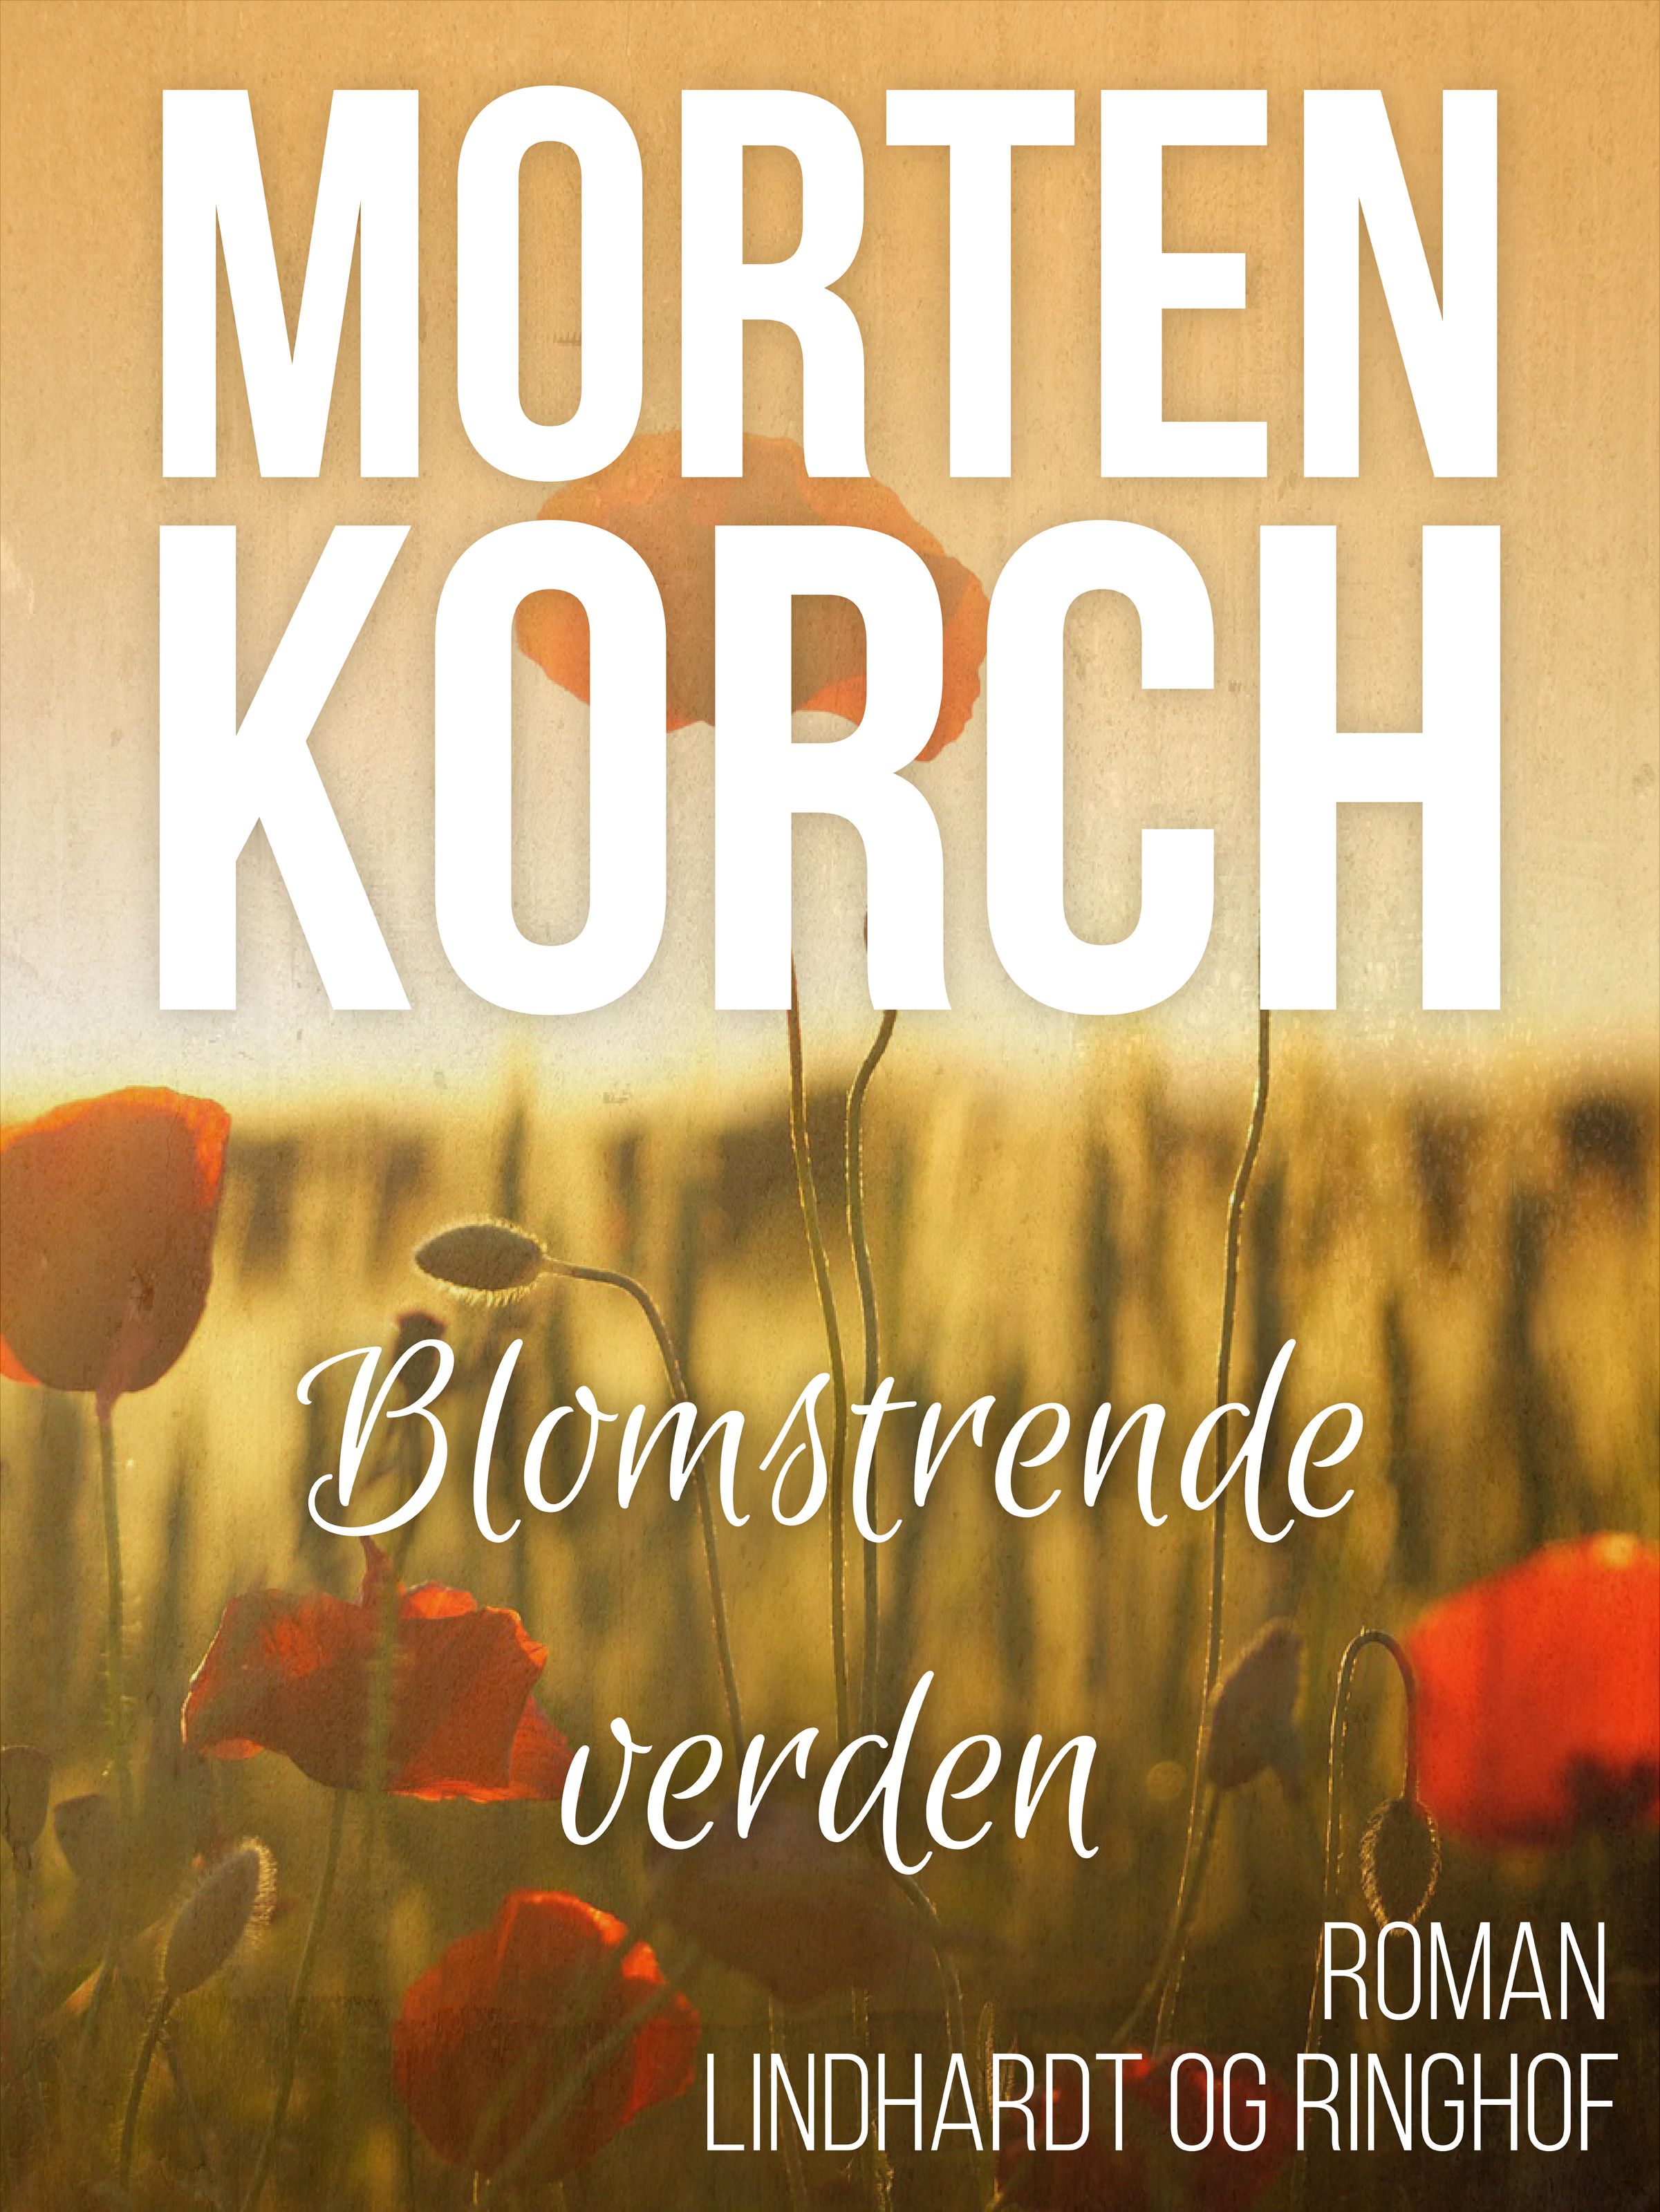 Blomstrende verden, ljudbok av Morten Korch